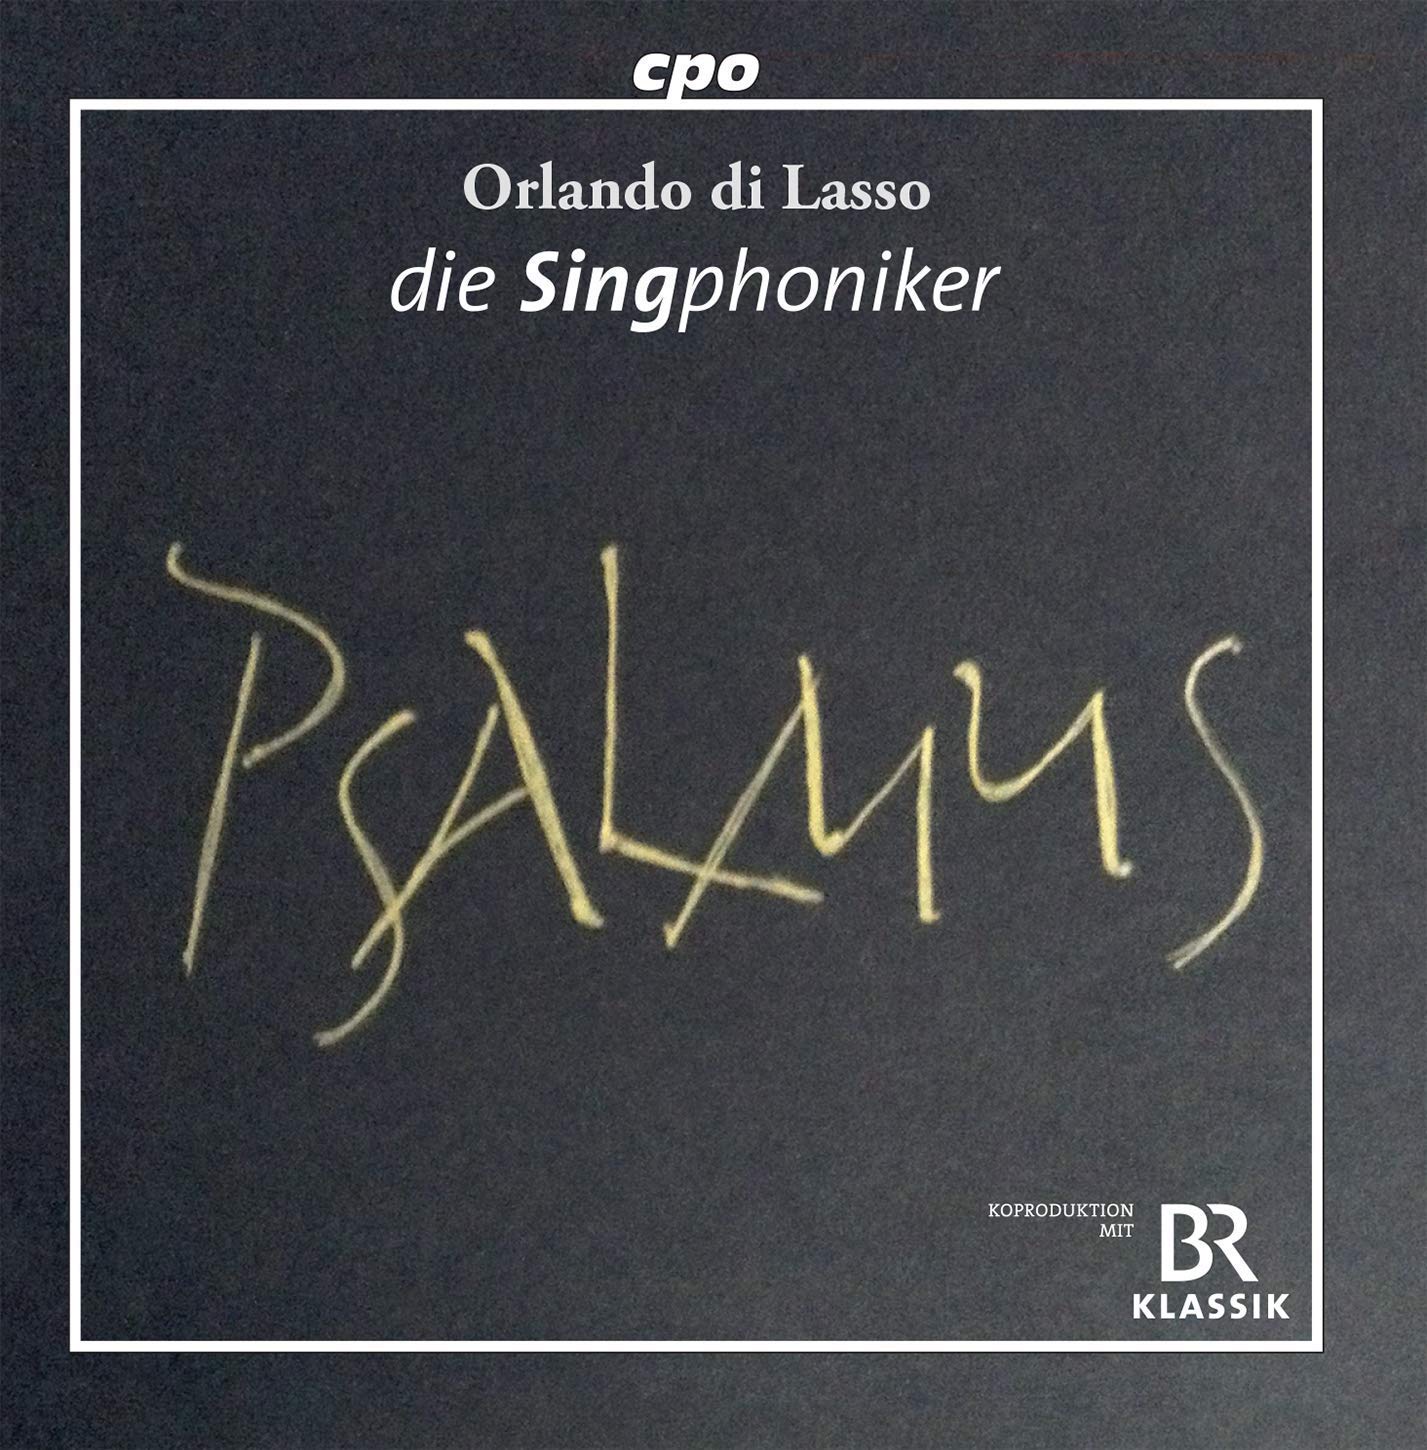 Lassus Psalmus CD cover